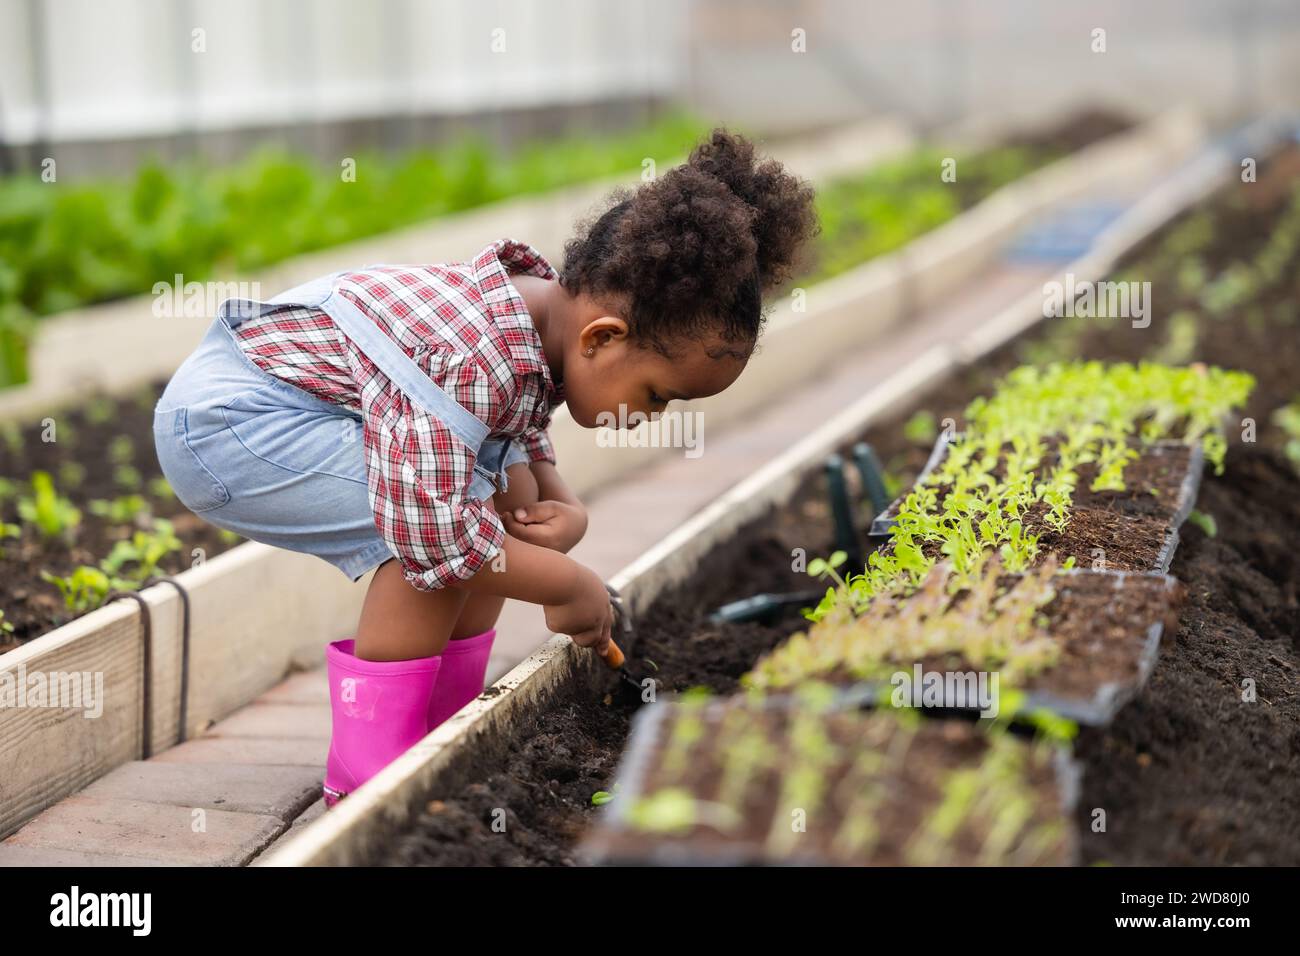 Afrikanisches schwarzes Kind beim Pflanzen des grünen Baumes in der Landwirtschaft. Kinder lieben das Naturkonzept. Stockfoto